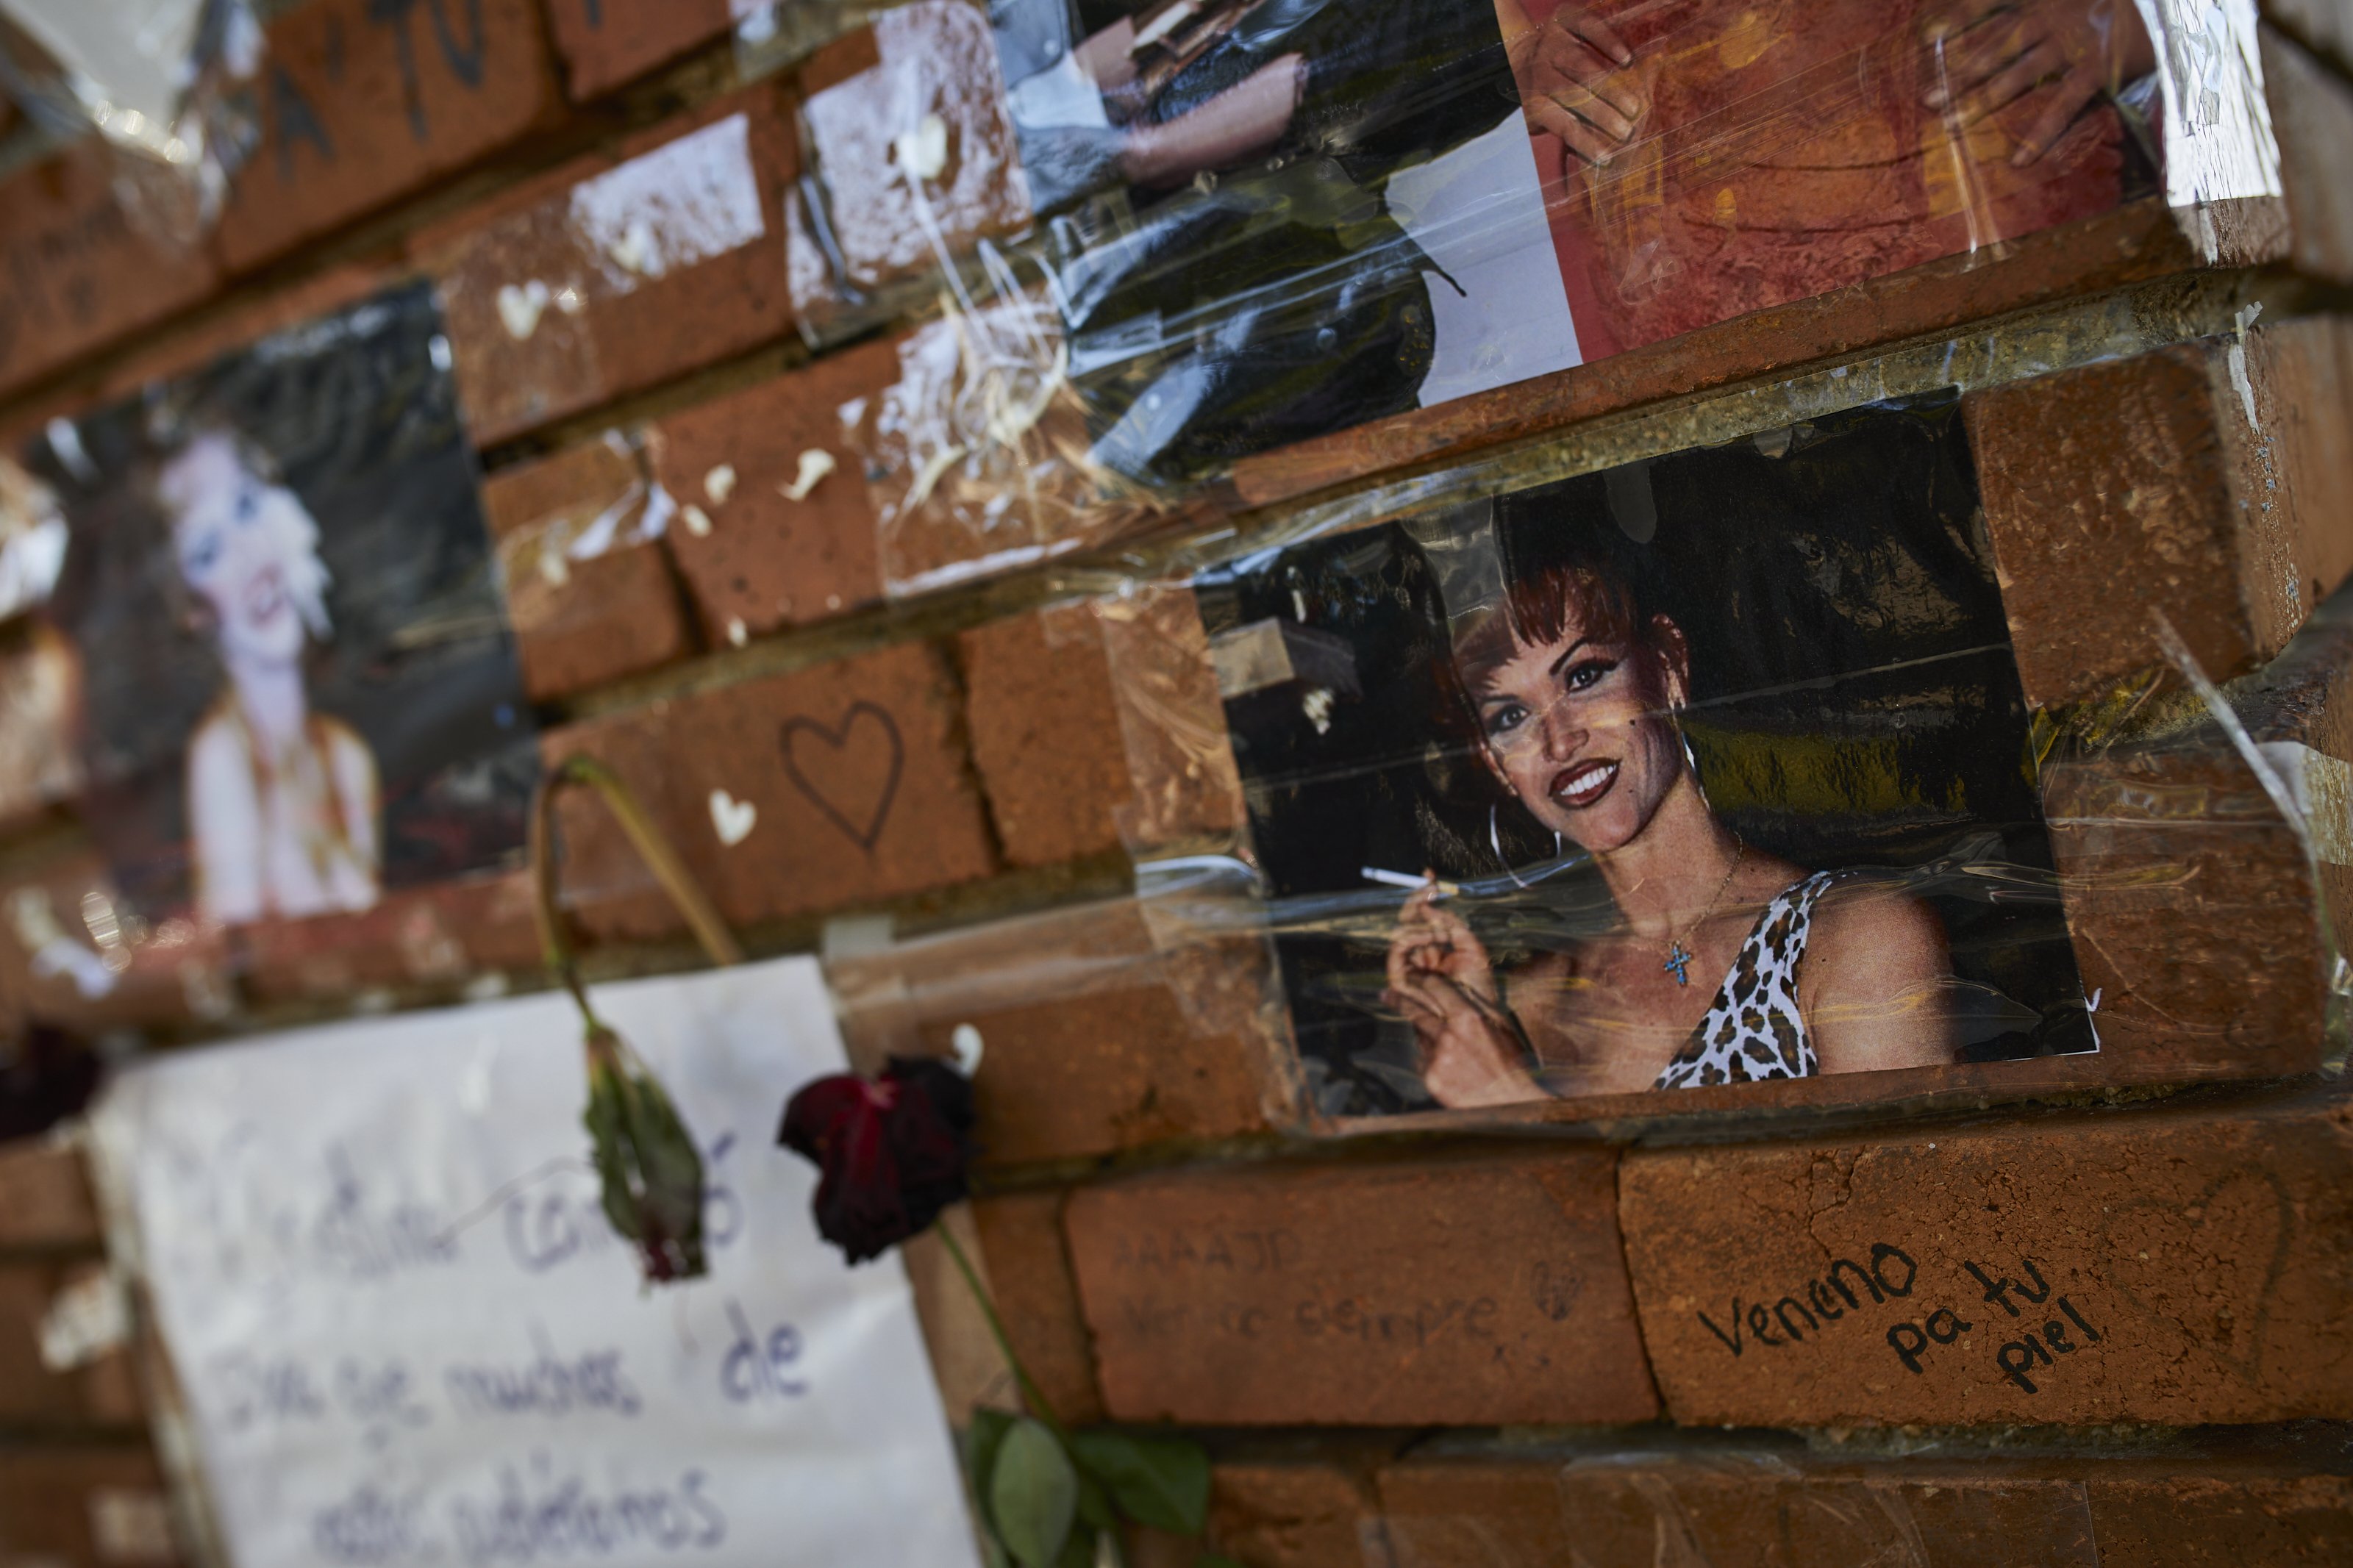 Acercamiento del tributo a "La Veneno" en Madrid. | Foto: Getty Images